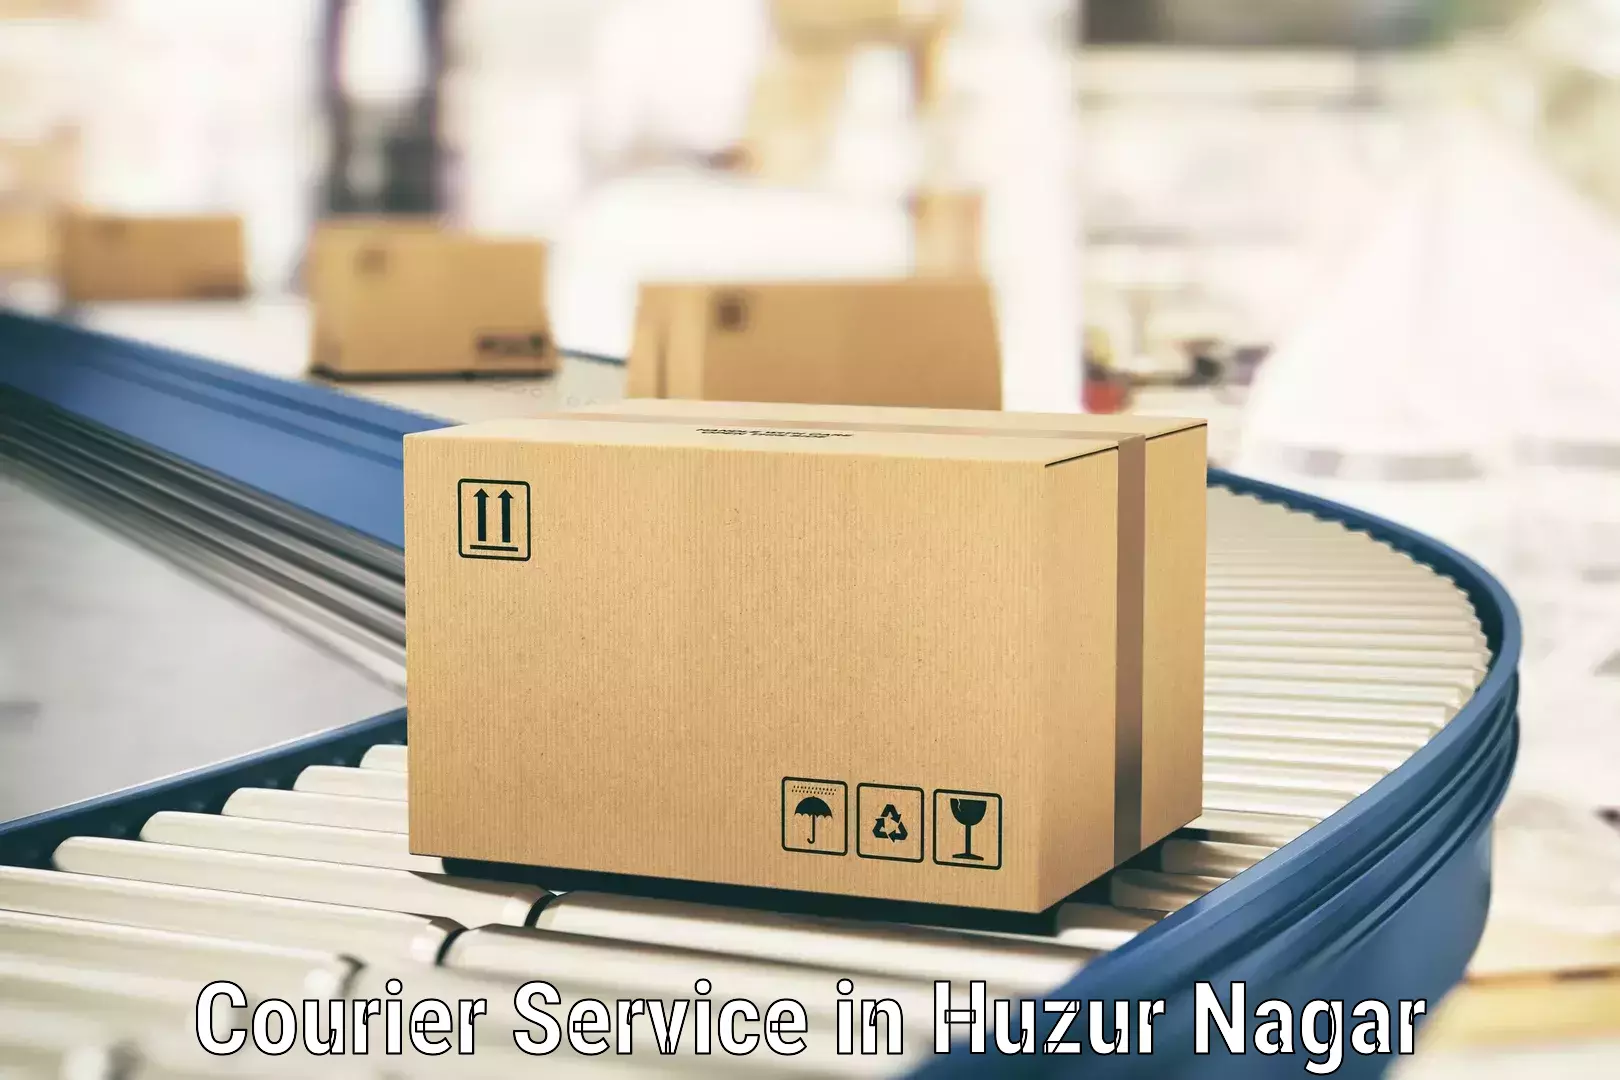 Advanced shipping technology in Huzur Nagar